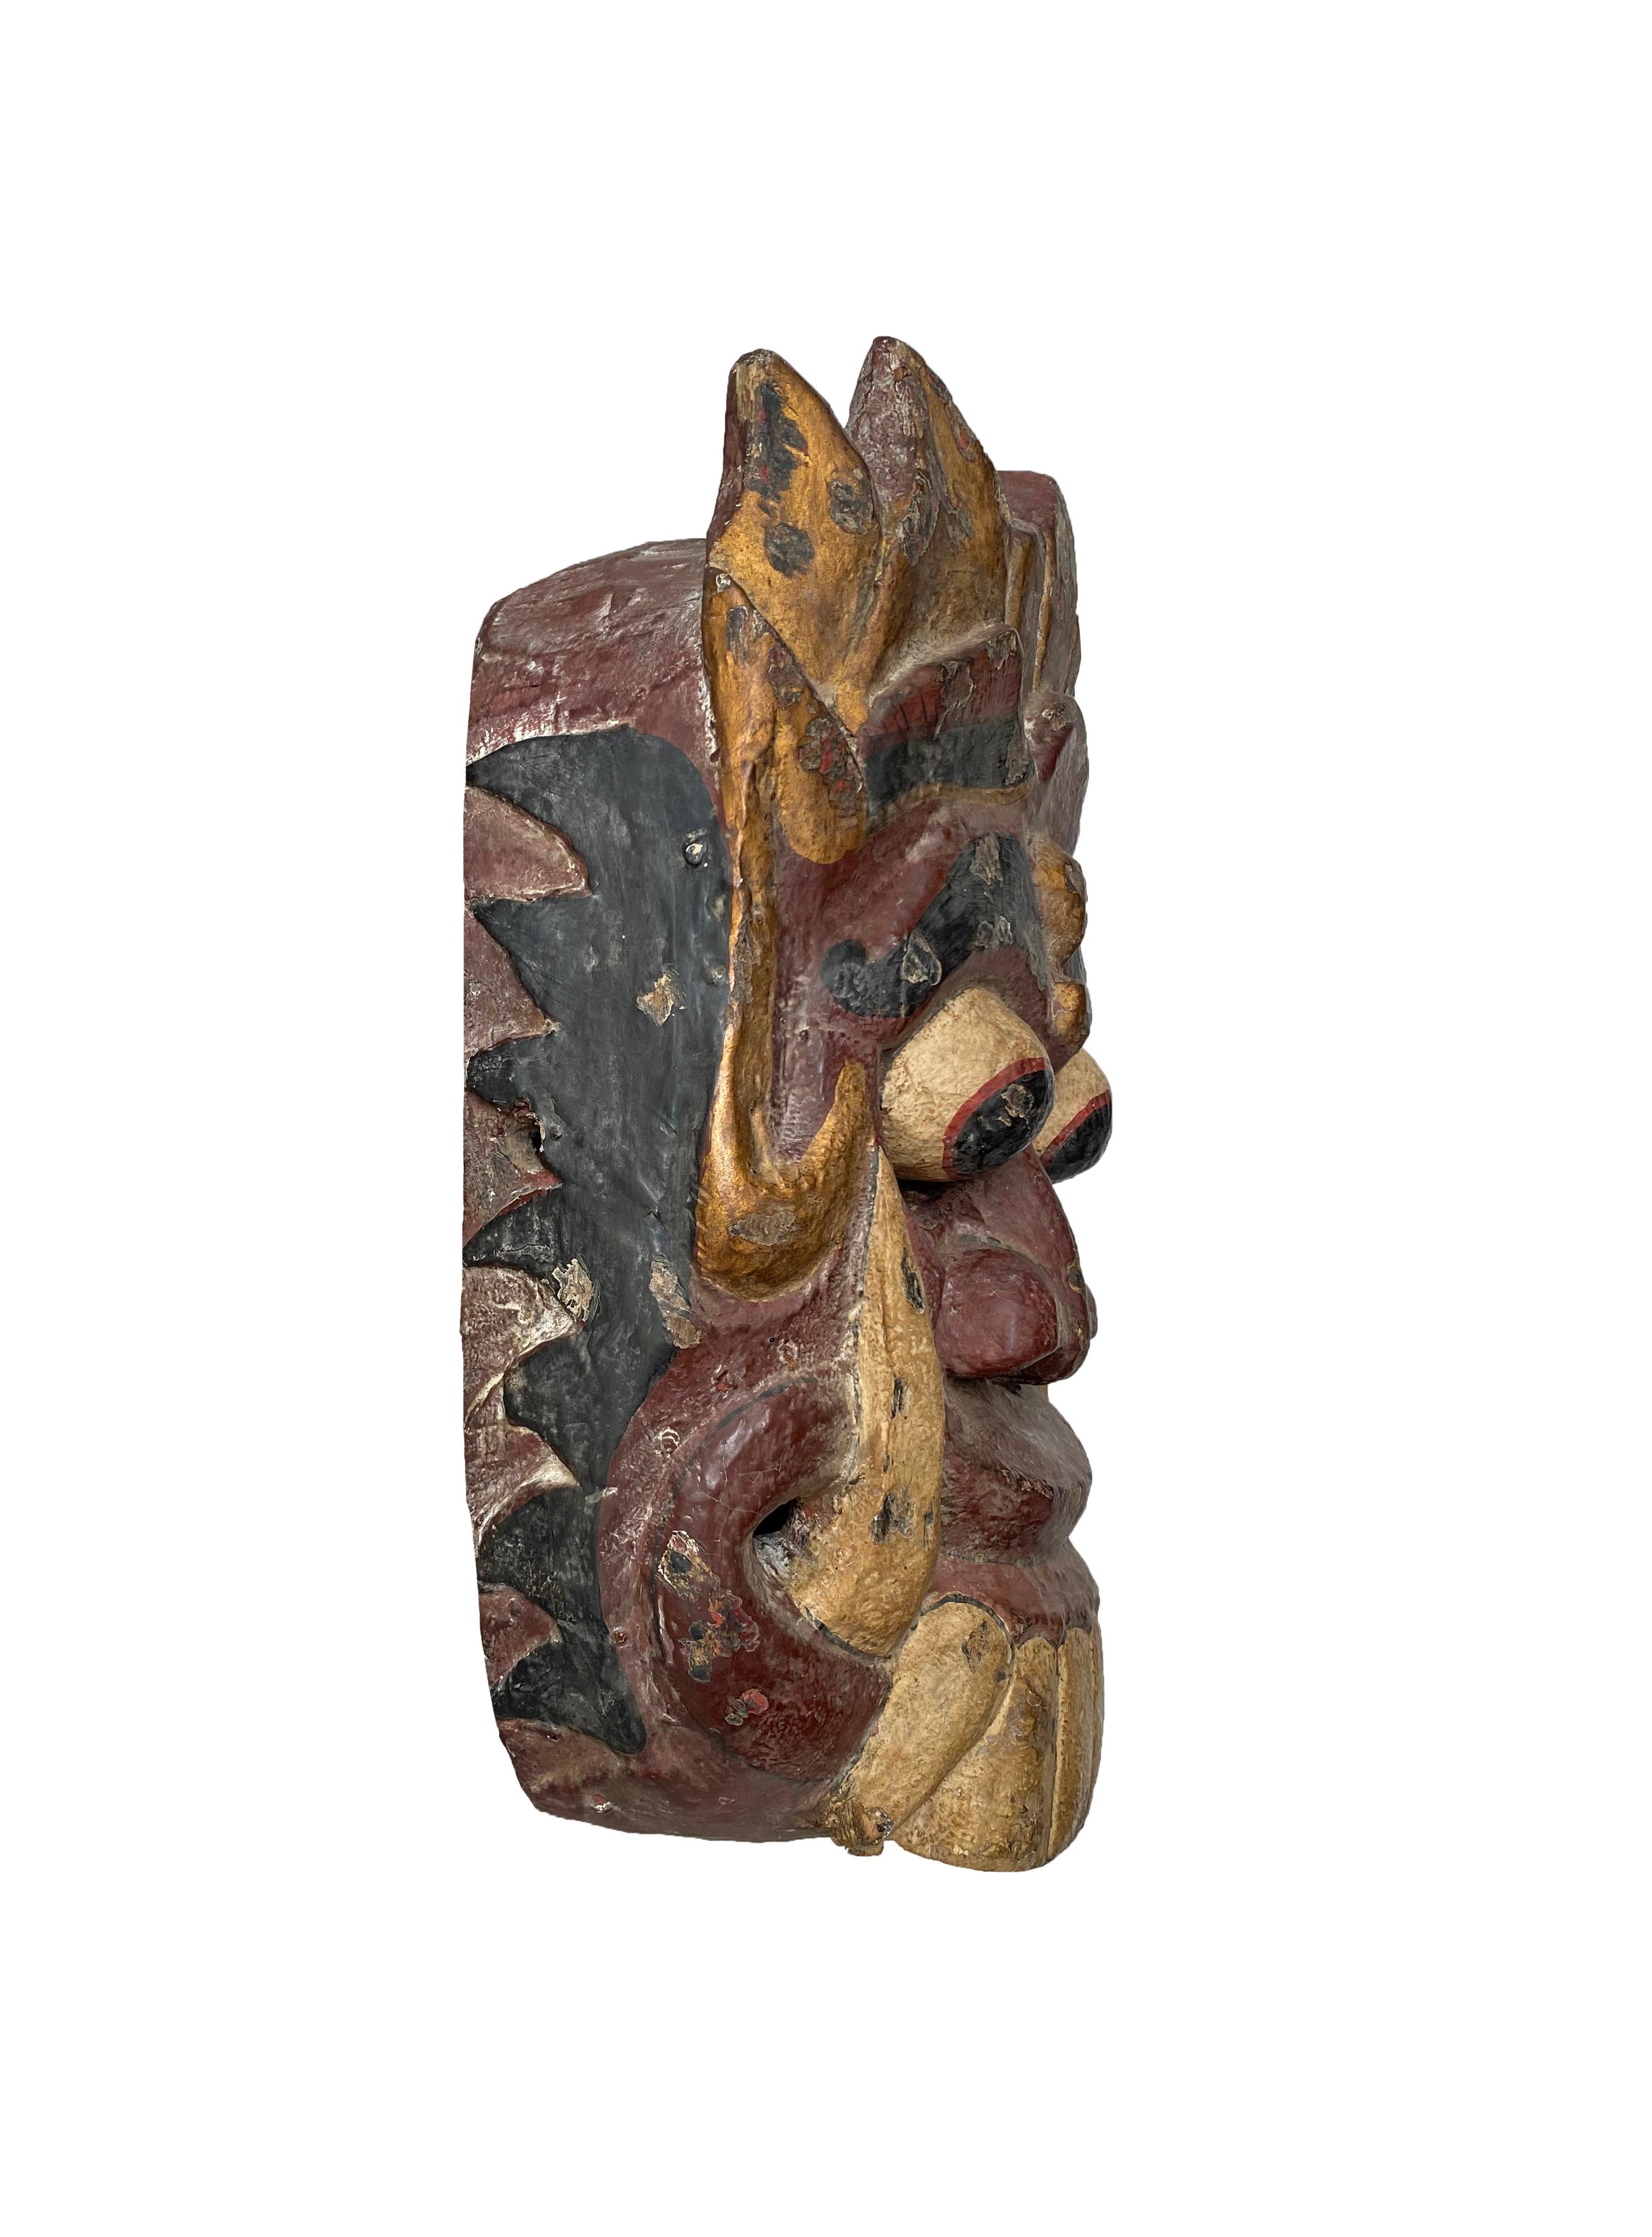 Ce masque sculpté à la main provient de l'île de Bali et représente Rangda, la reine démoniaque de la mythologie hindoue balinaise. Ce masque aurait été utilisé lors de cérémonies et/ou de spectacles de danse. Il présente un mélange de polychromie